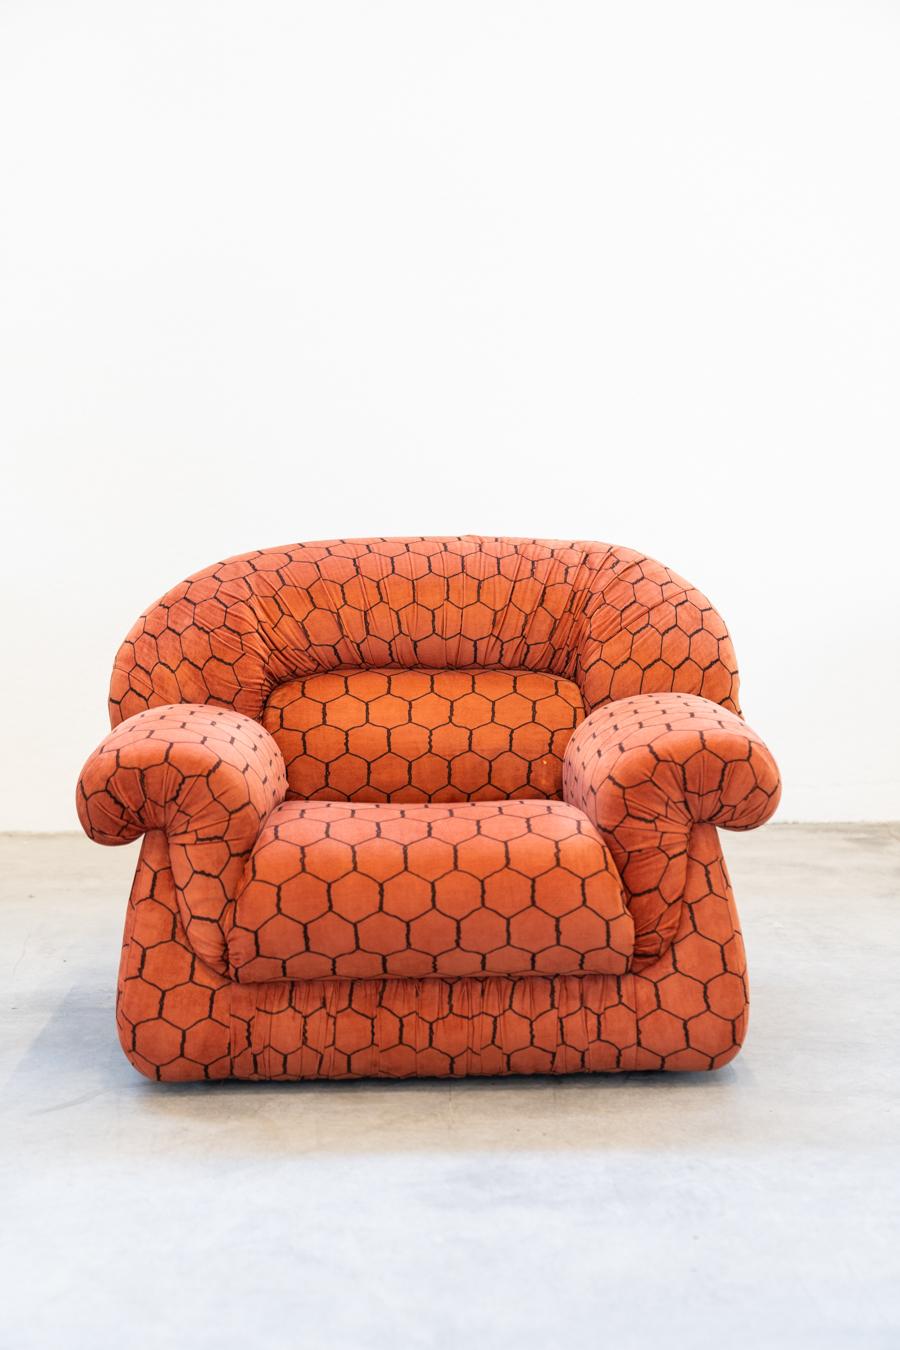 Salon vintage, style club, composé d'un canapé 3 places et de 2 fauteuils, 				1970s
Très bon état
Réalisé en tissu orange, orné de motifs hexagonaux dans des couleurs vives 	chaque partie d'entre eux.  
Canapé : H78 x L220 x P100
Fauteuil : H80 x